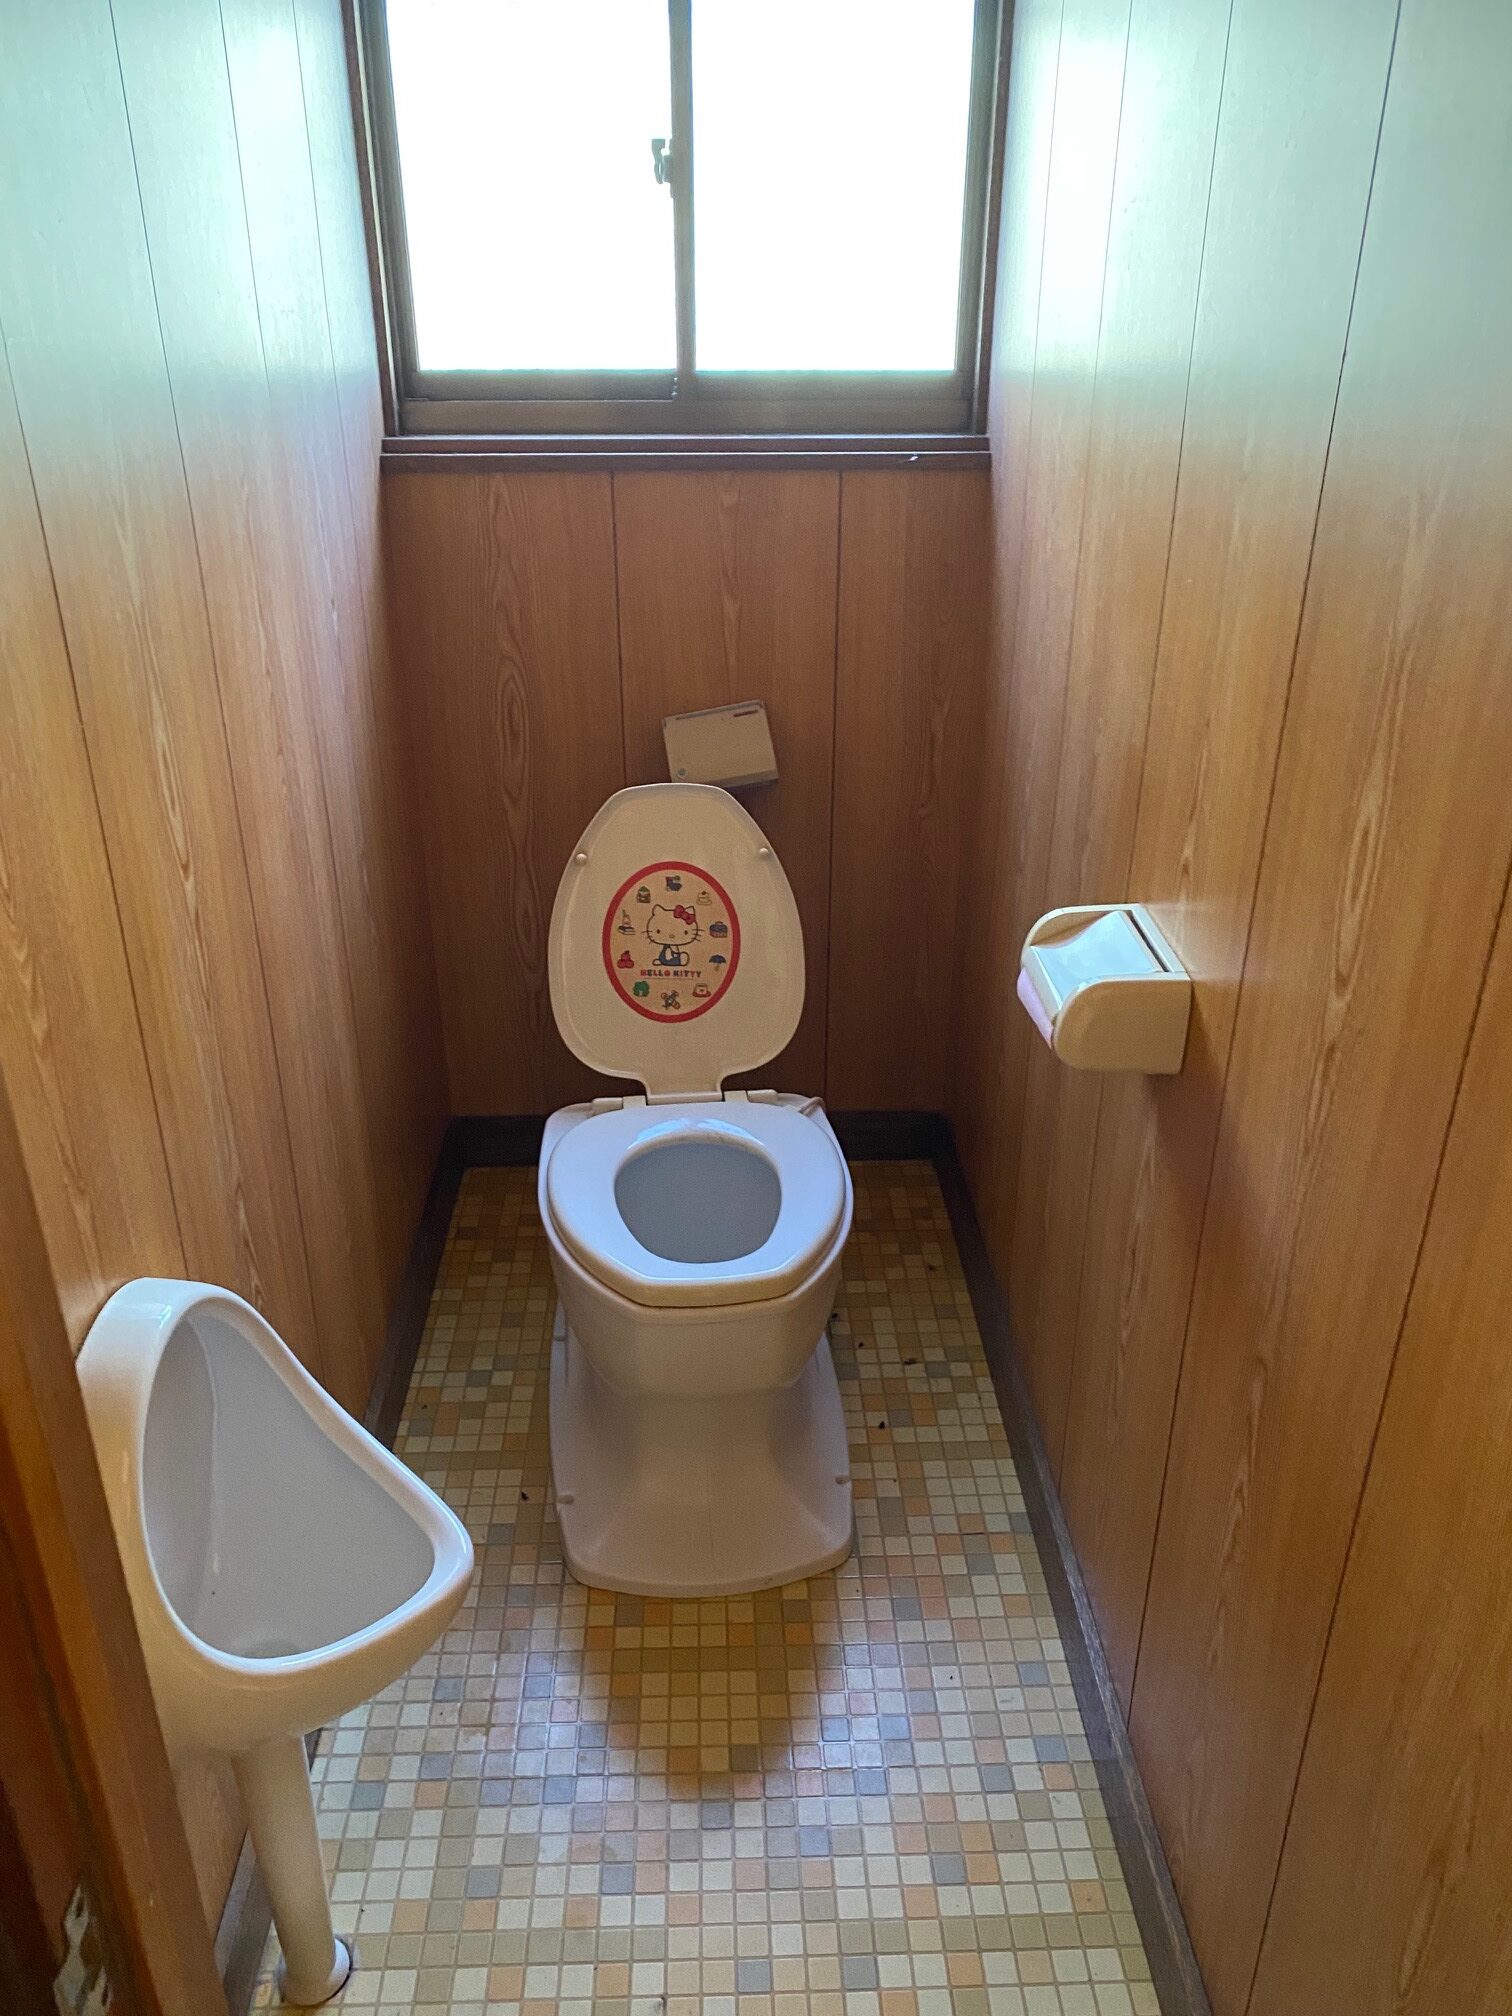 岩手県久慈市の物件のトイレは汲み取り式です。同じスペース内に男性用便器も設けられています。こちらはリフォームするのがよいでしょう。